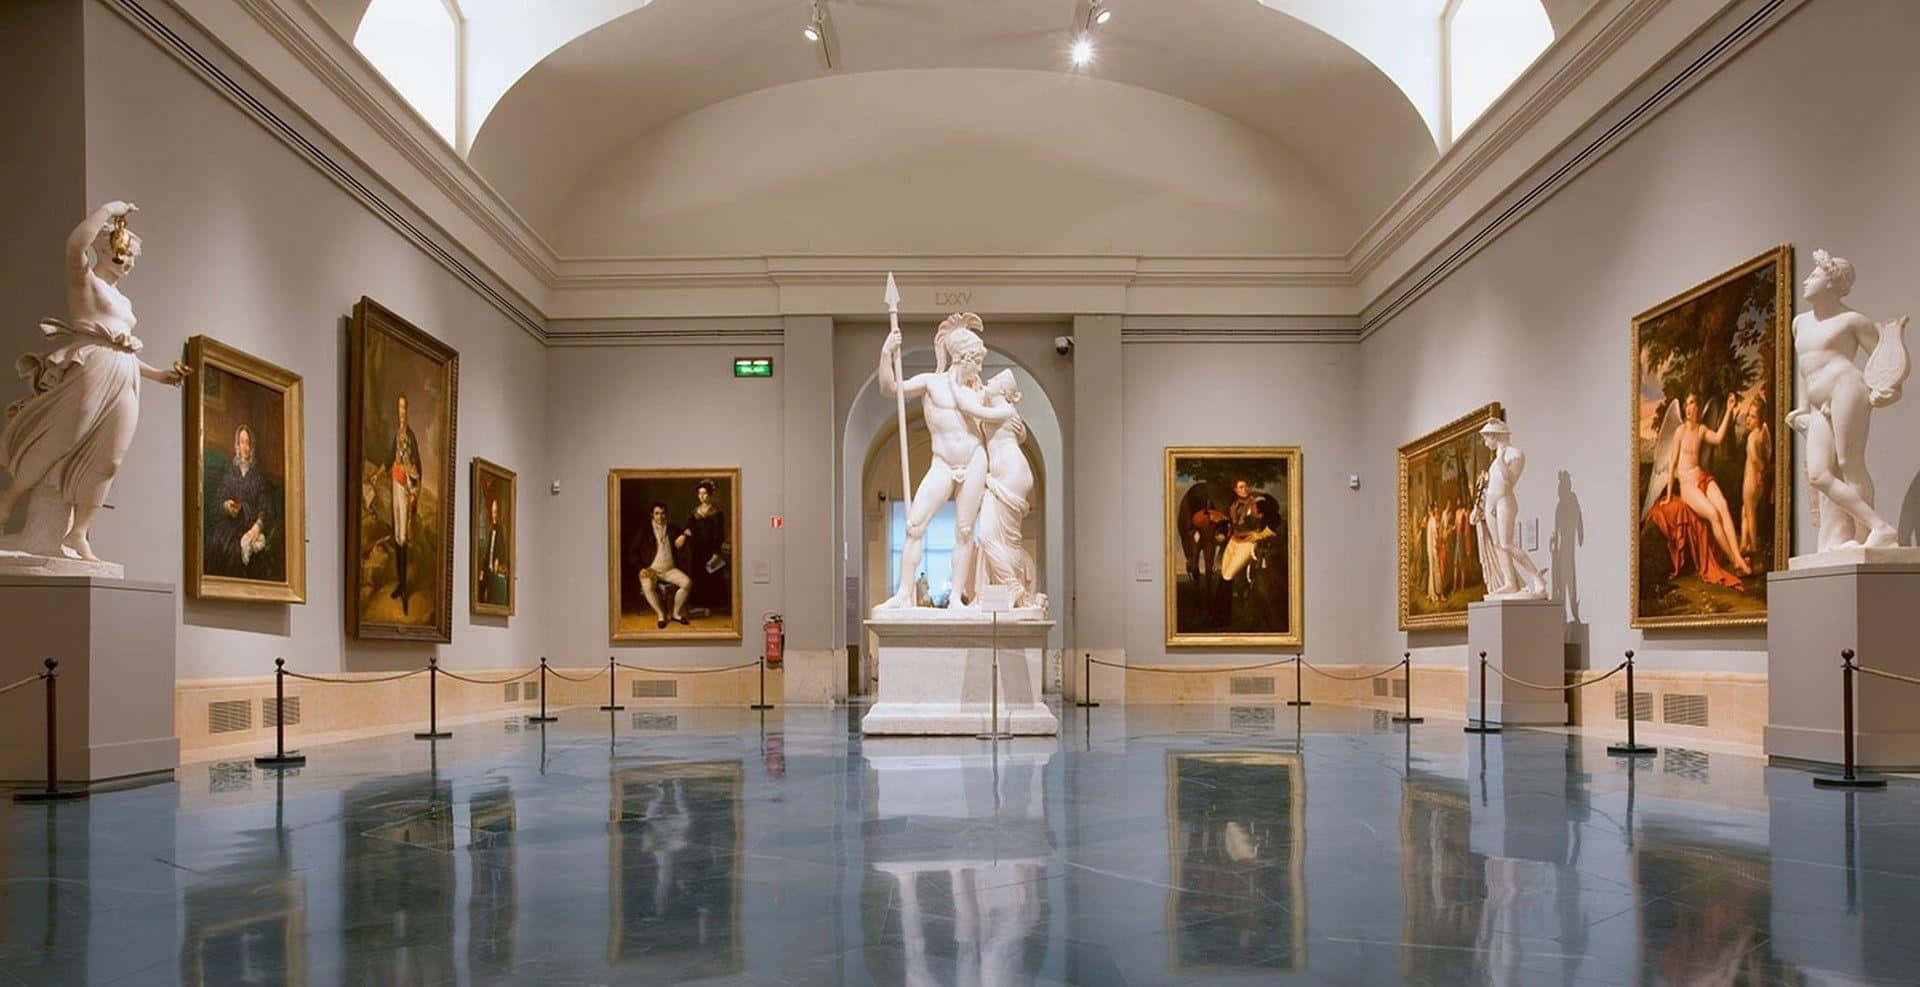 Einmuseum Mit Statuen Und Gemälden An Den Wänden.